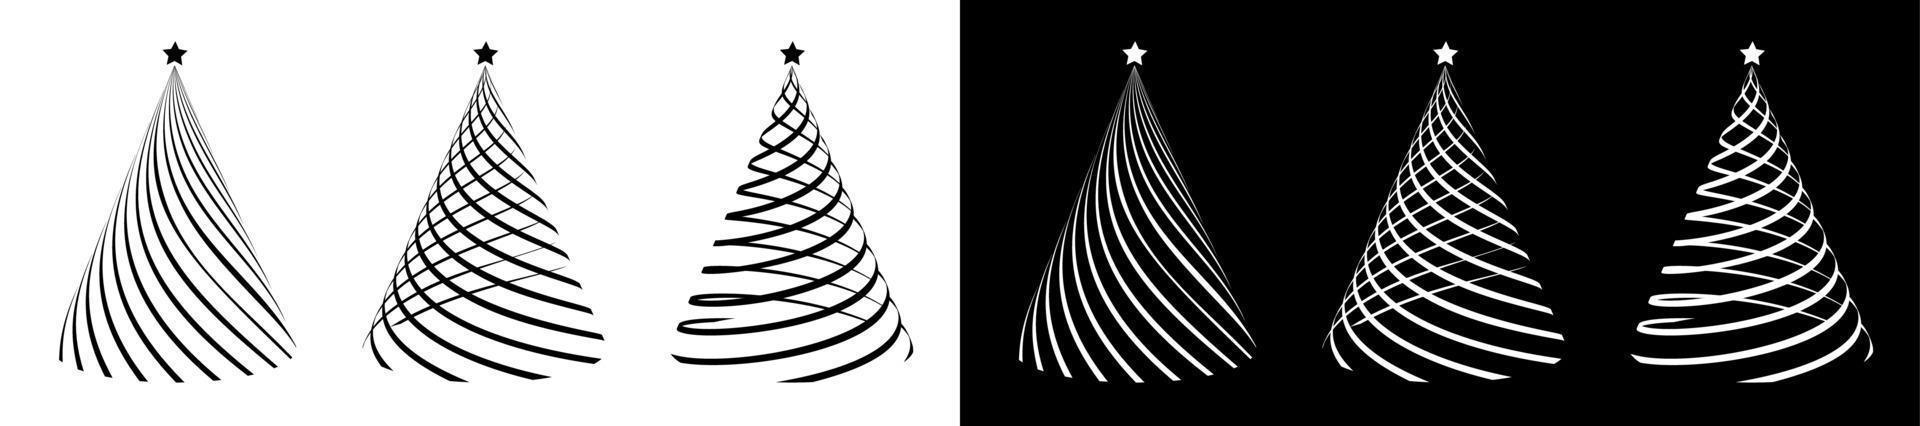 ensemble de silhouettes d'arbres de noël, stylisées enlacées d'un ruban festif. noël et nouvel an 2021. icônes. vecteur noir et blanc